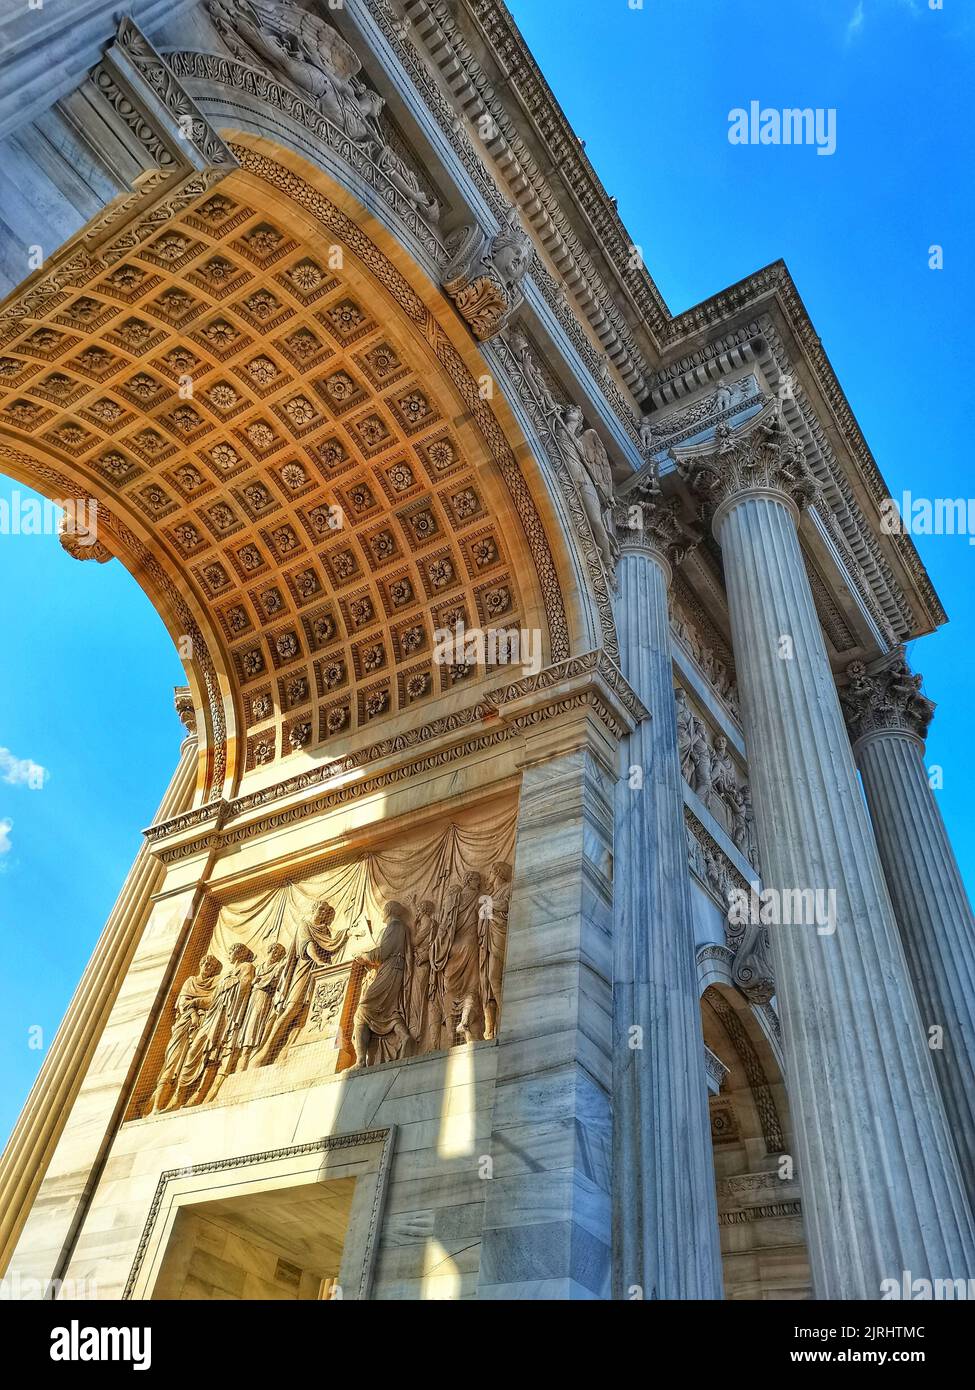 The famous Porta Sempione (Arco della Pace) landmark in Milan, Italy Stock  Photo - Alamy